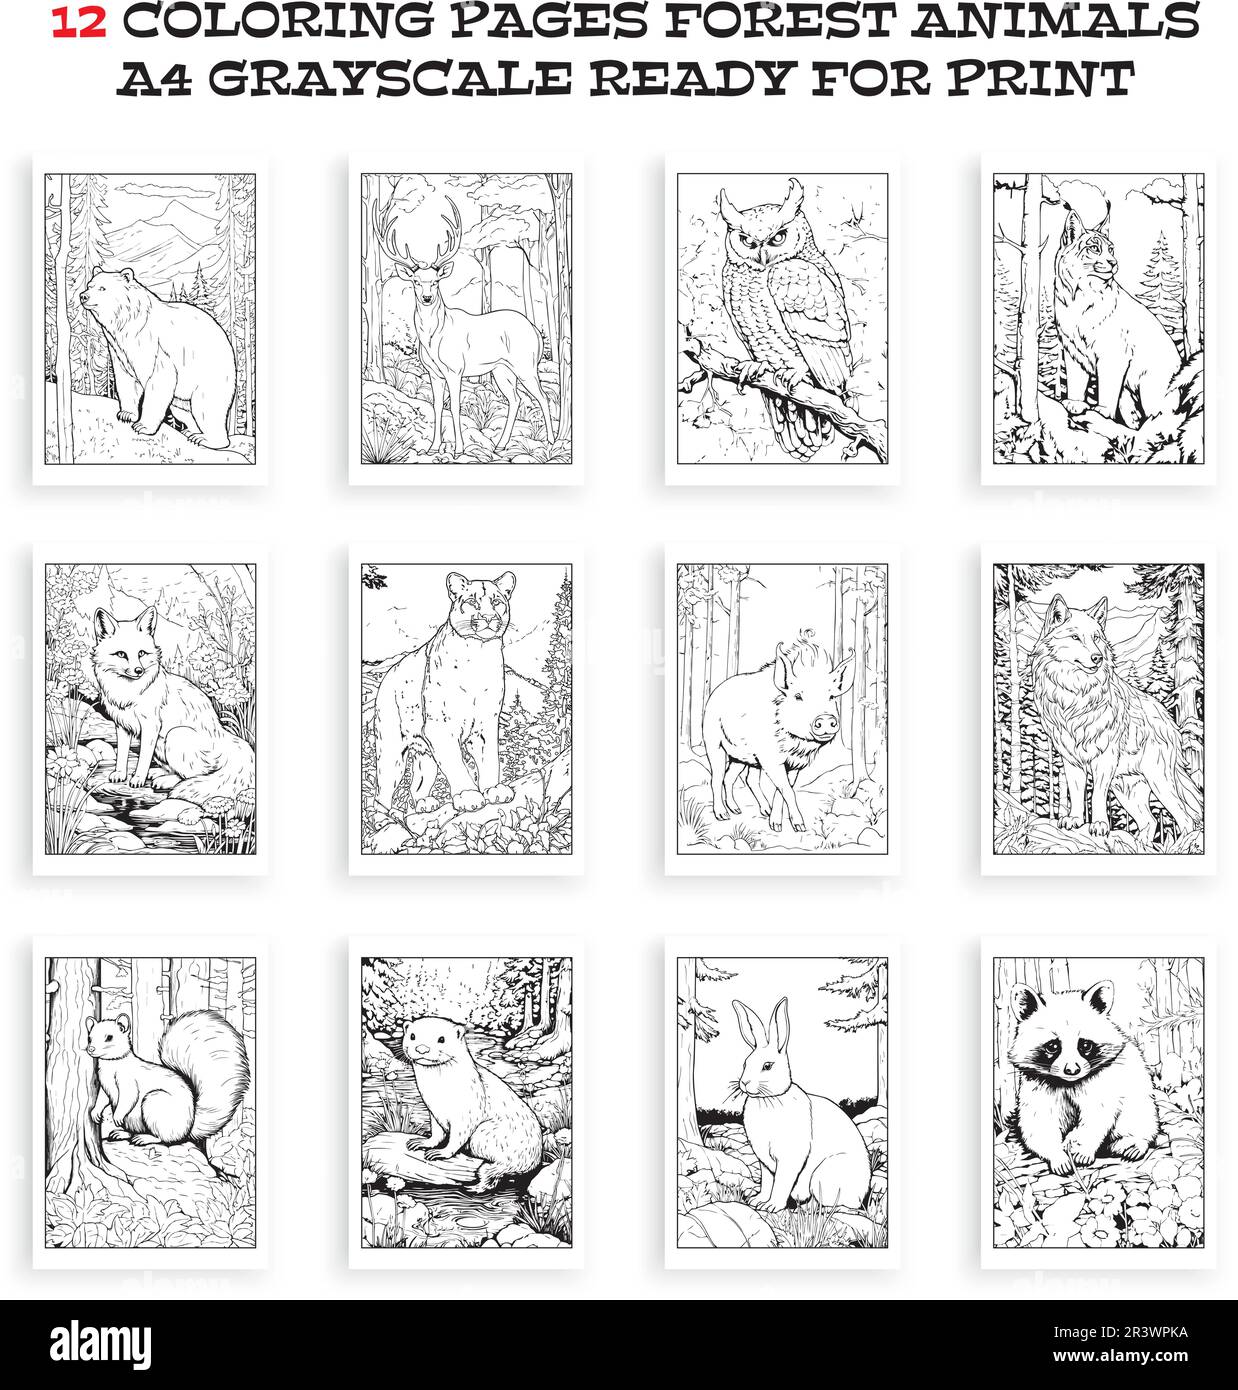 Waldtiere Malbuch, Vektor. 12 Ausmalseiten Illustration mit Waldtieren, die druckfertig sind, A4 Graustufen. Stock Vektor